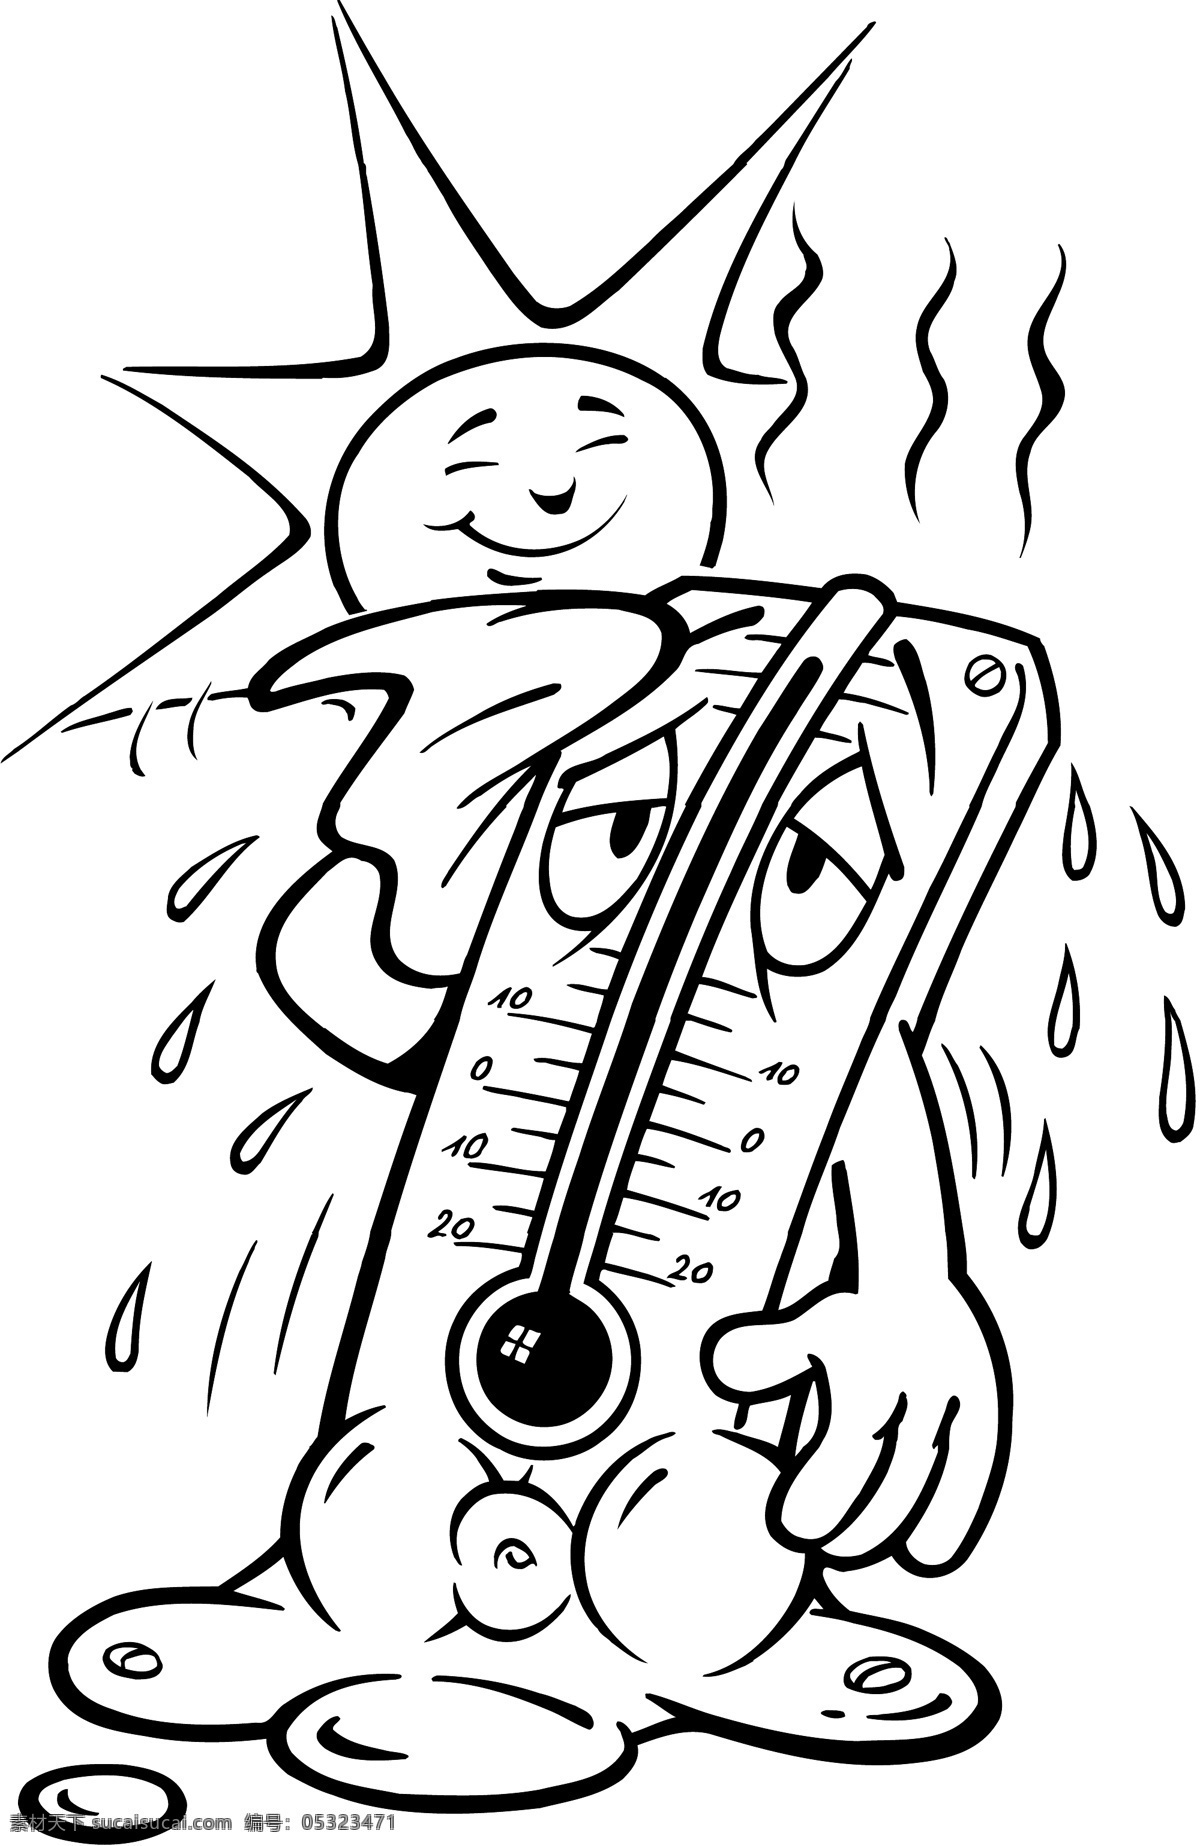 温度计 天气预报 高温 矢量图 插画 漫画 其他矢量 矢量插画 矢量漫画 矢量素材 矢量图库 温度 矢量 模板下载 其他矢量图